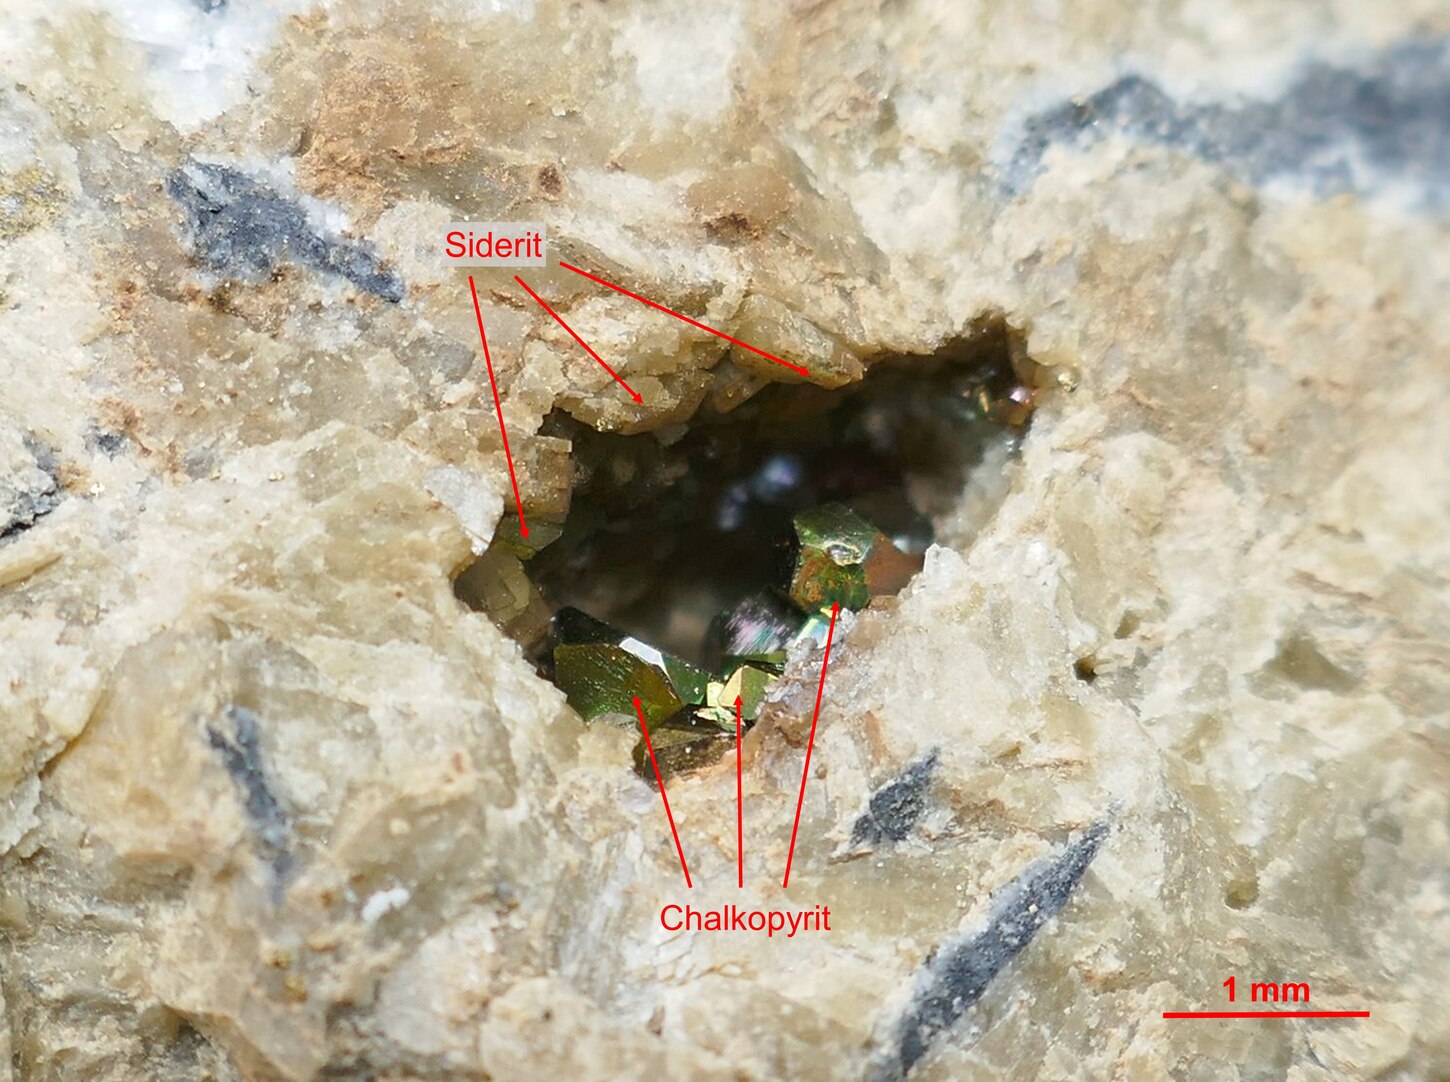 Kleine Druse mit Siderit- und Chalkopyrit-Mineralisation aus dem Erzgang "Brigitte Flacher" bei Bösenbrunn.